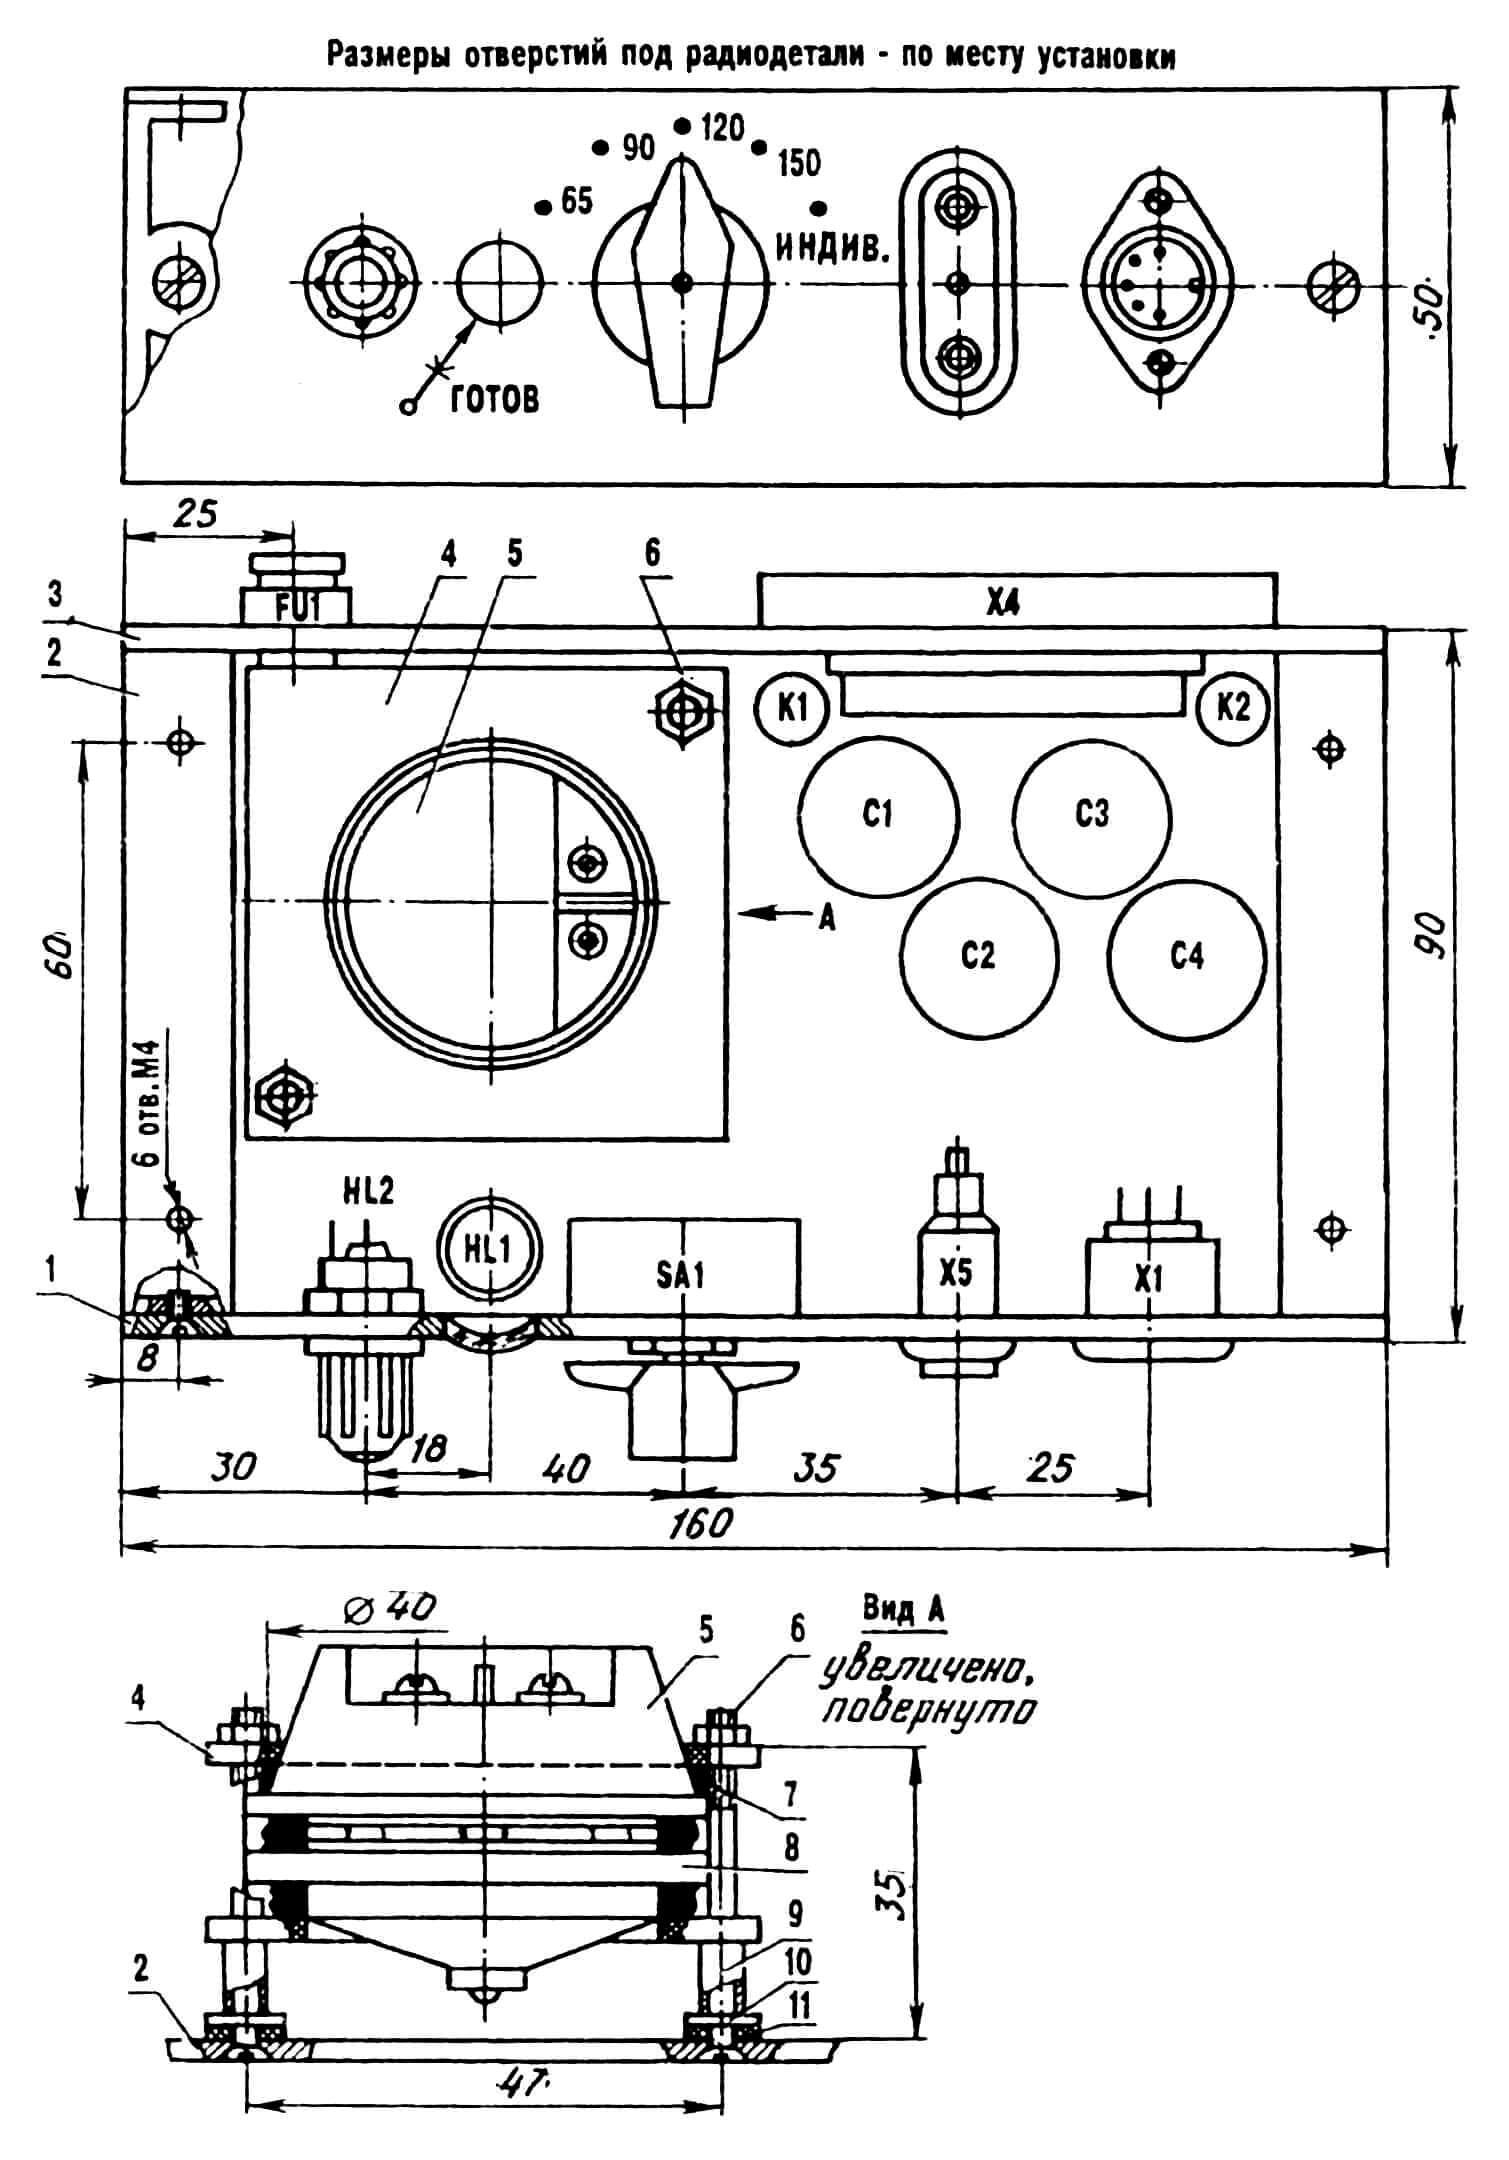 Компоновка ключа-автомата (крышка снята, шины и соединительные провода условно не показаны): 1 — панель передняя, 2 — корпус, 3 — панель задняя, 4 — панель-стяжка (стеклотекстолит 55x55x3, 2 шт.), 5 — капсюль телефонный ТА-56, 6 — болт М4 с гайкой (2 шт.), 7 — кольцо-прокладка резиновая (3 шт.), 8 — капсюль микрофонный МК-16 (МК-10), 9 — втулка-распорка (2 шт.), 10 — шайба металлическая (2 шт.), 11 — шайба резиновая (2 шт.).